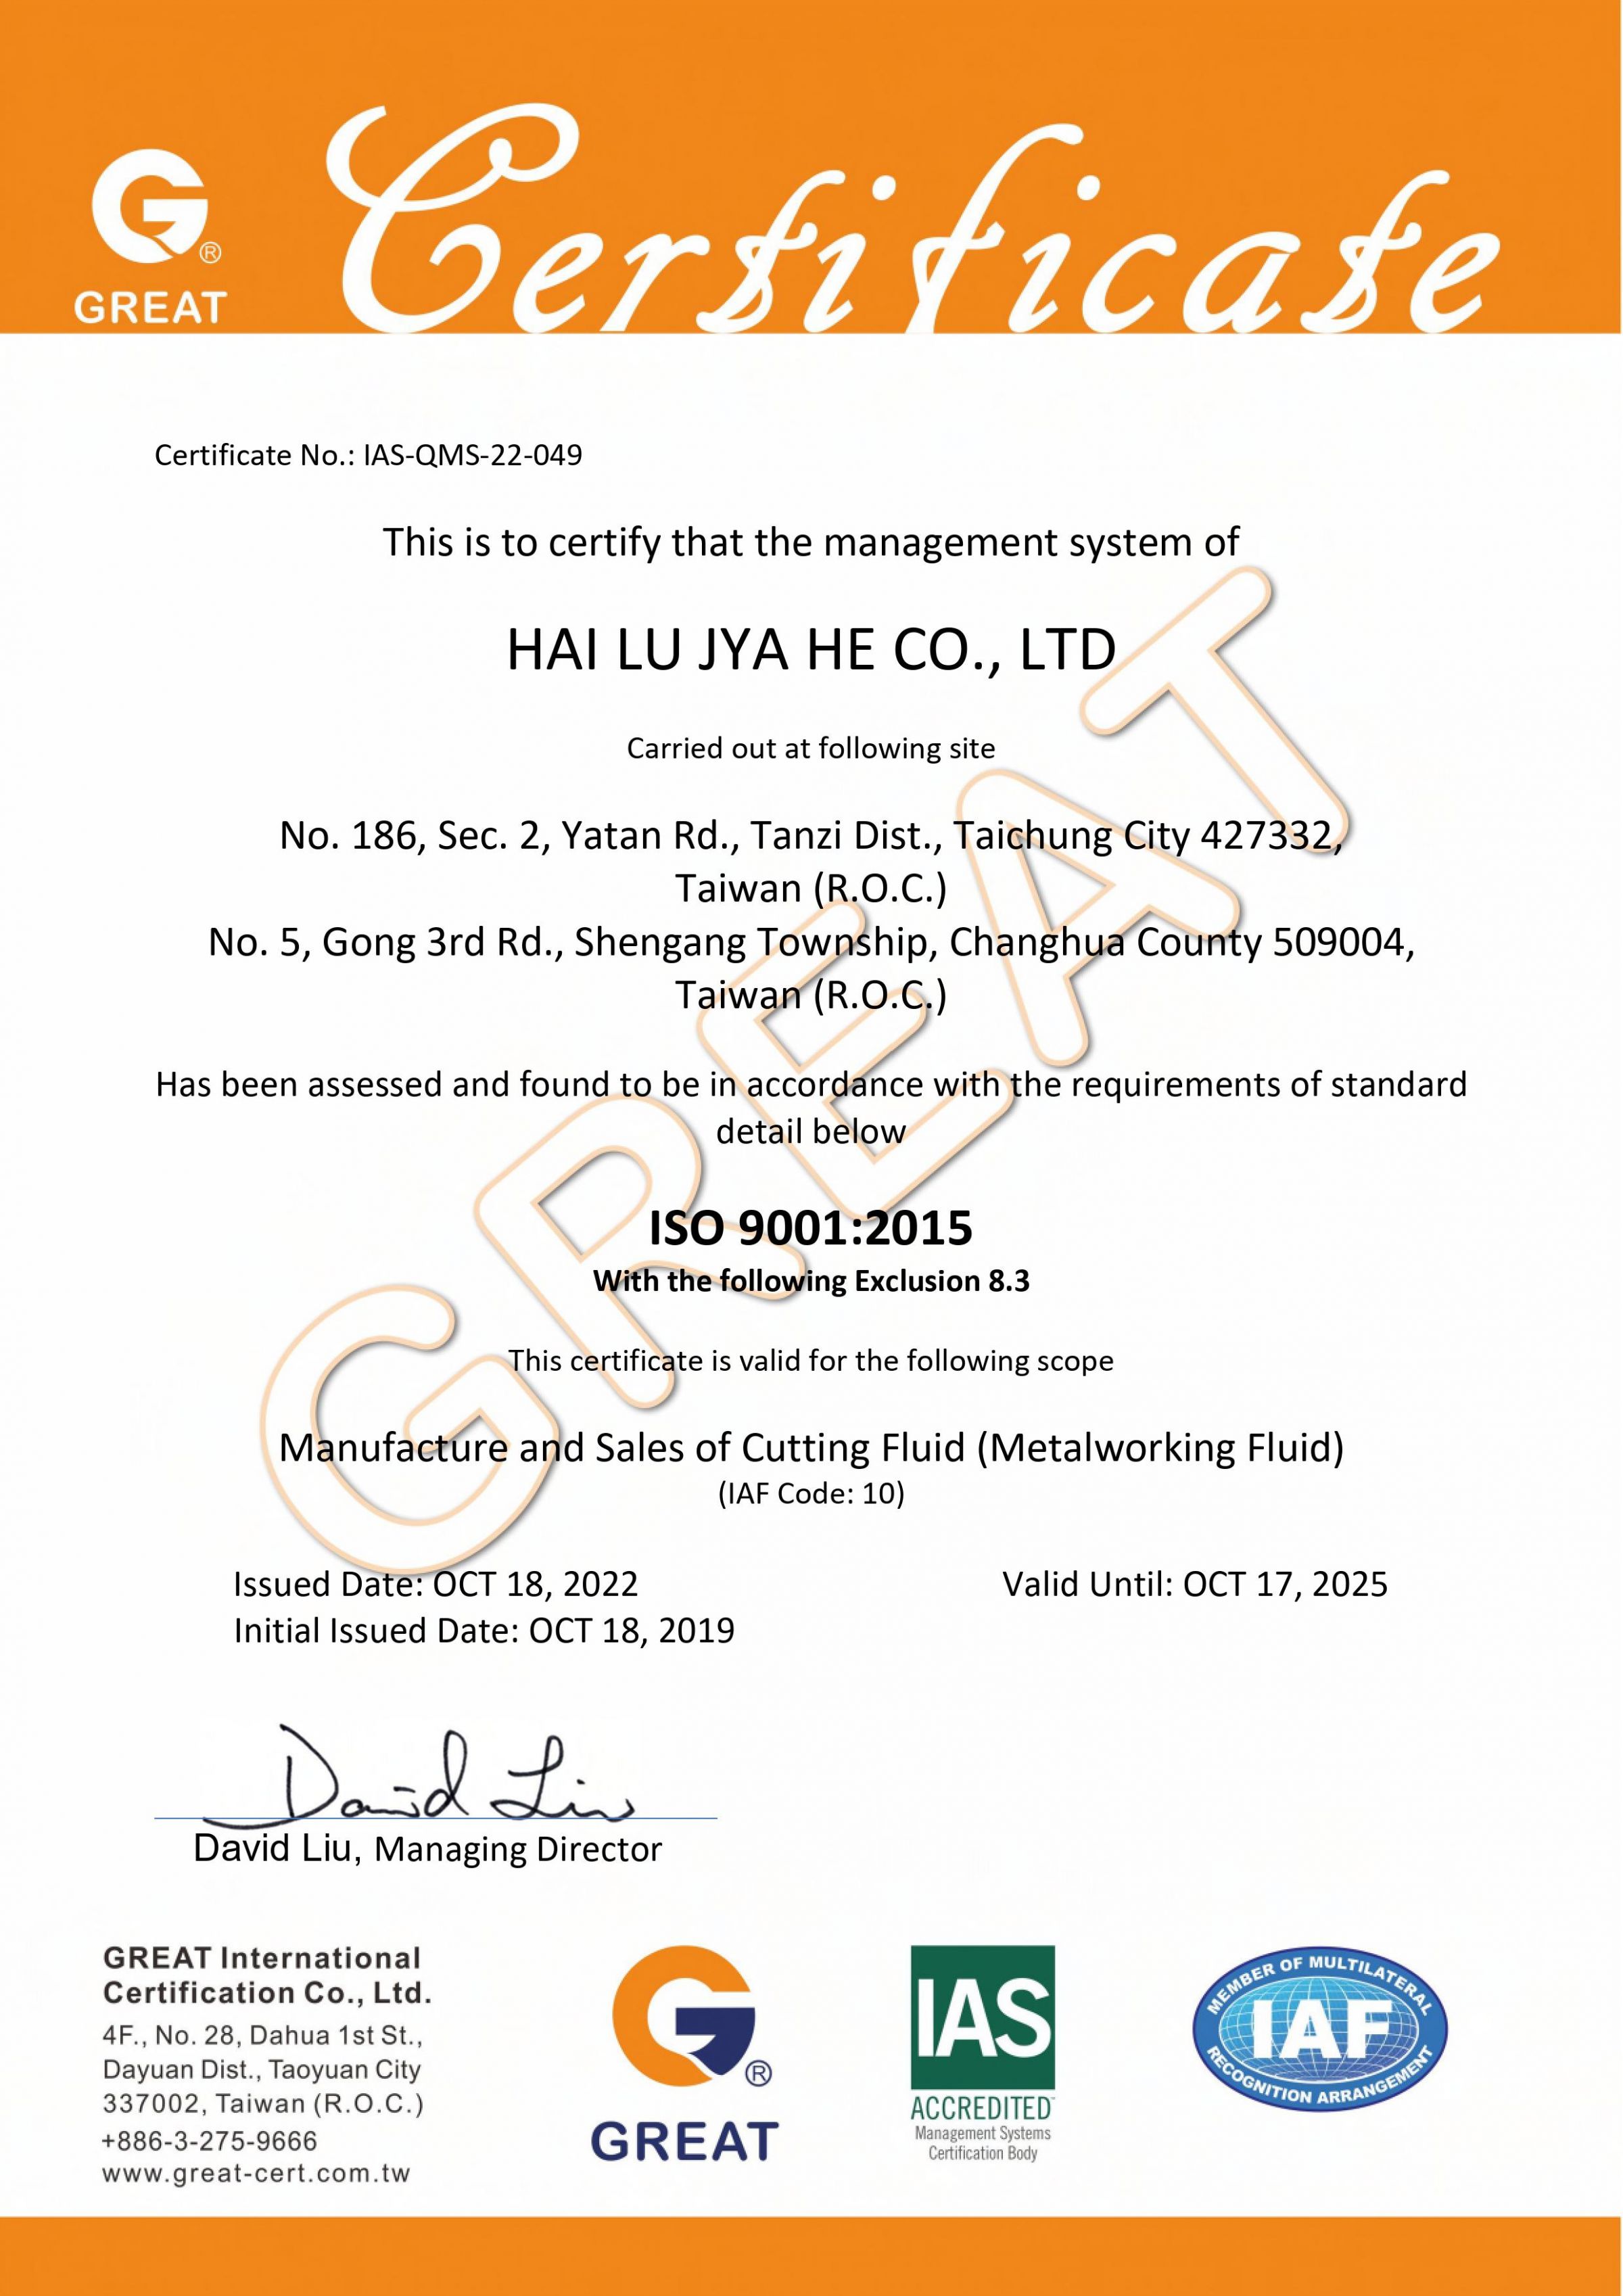 ISO 9001:2015 (Sistema de gestión de calidad)